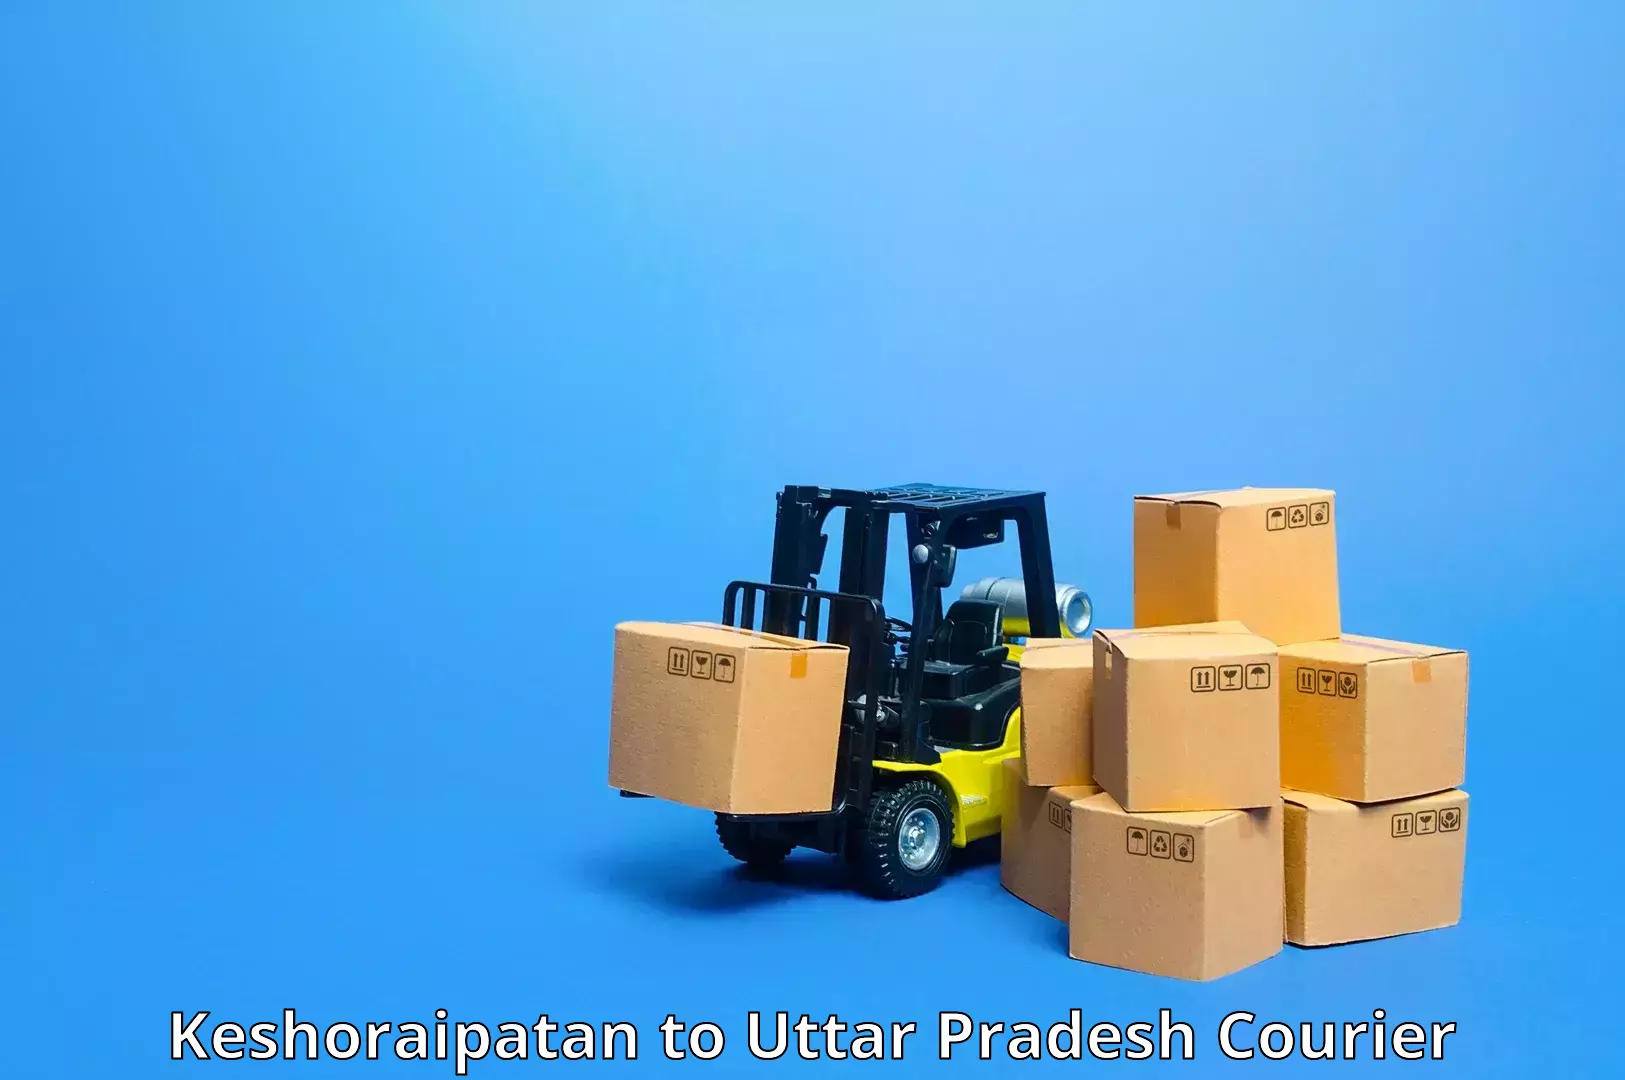 Tech-enabled shipping Keshoraipatan to Marihan